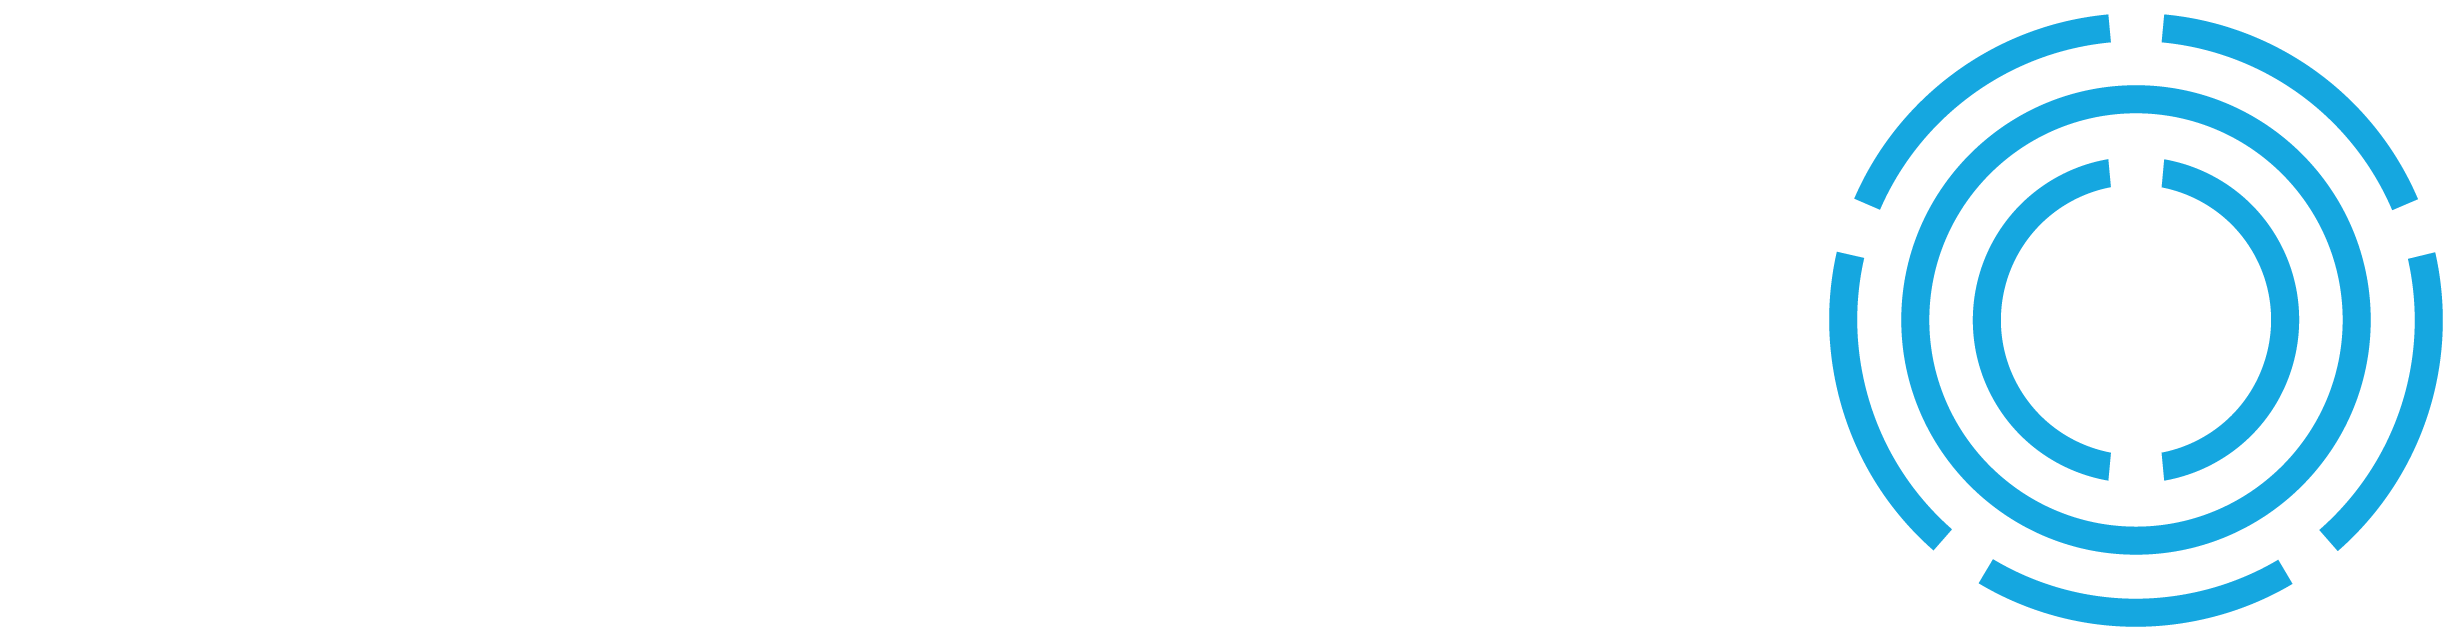 Neil Logo - Logo Breakdown | NEIL 2017 Annual Report